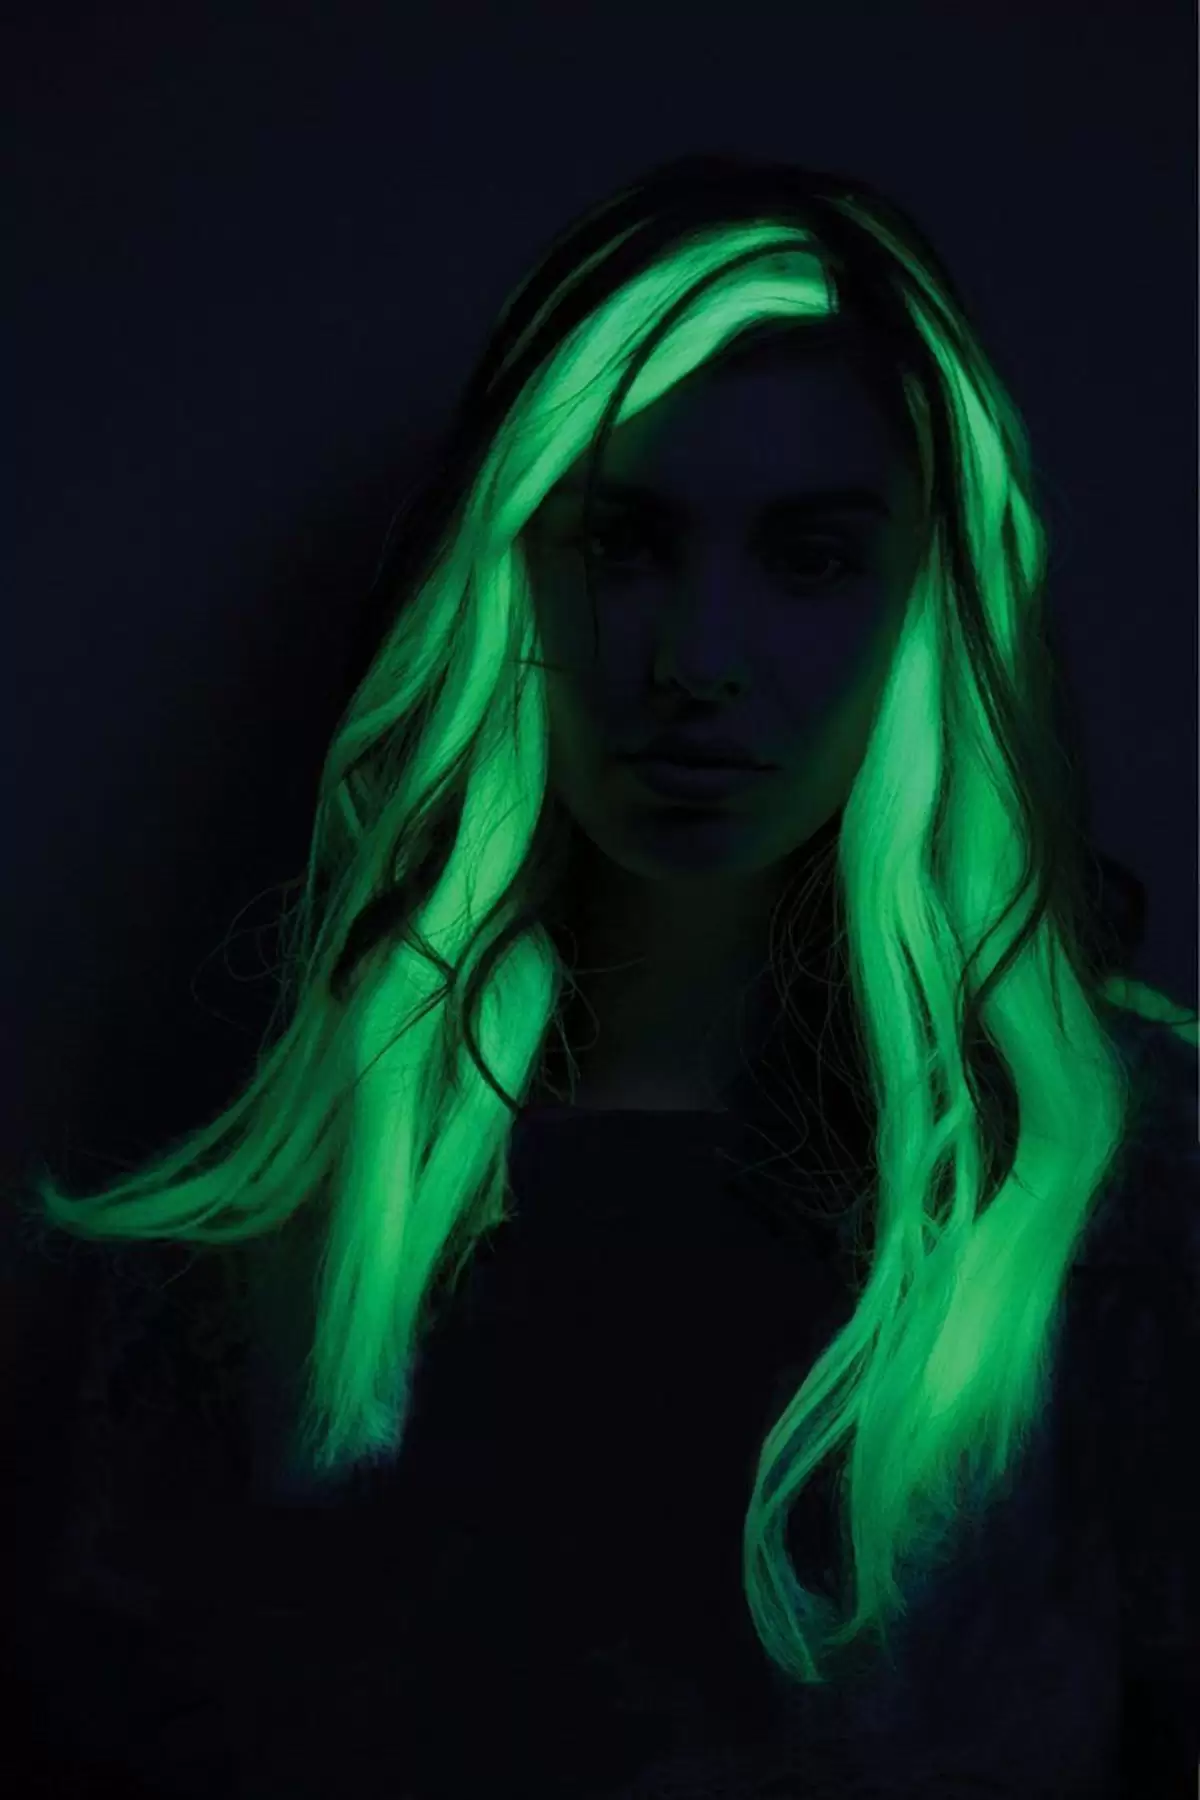 Karanlıkta Renk Değiştiren Saç - Glow In The Dark